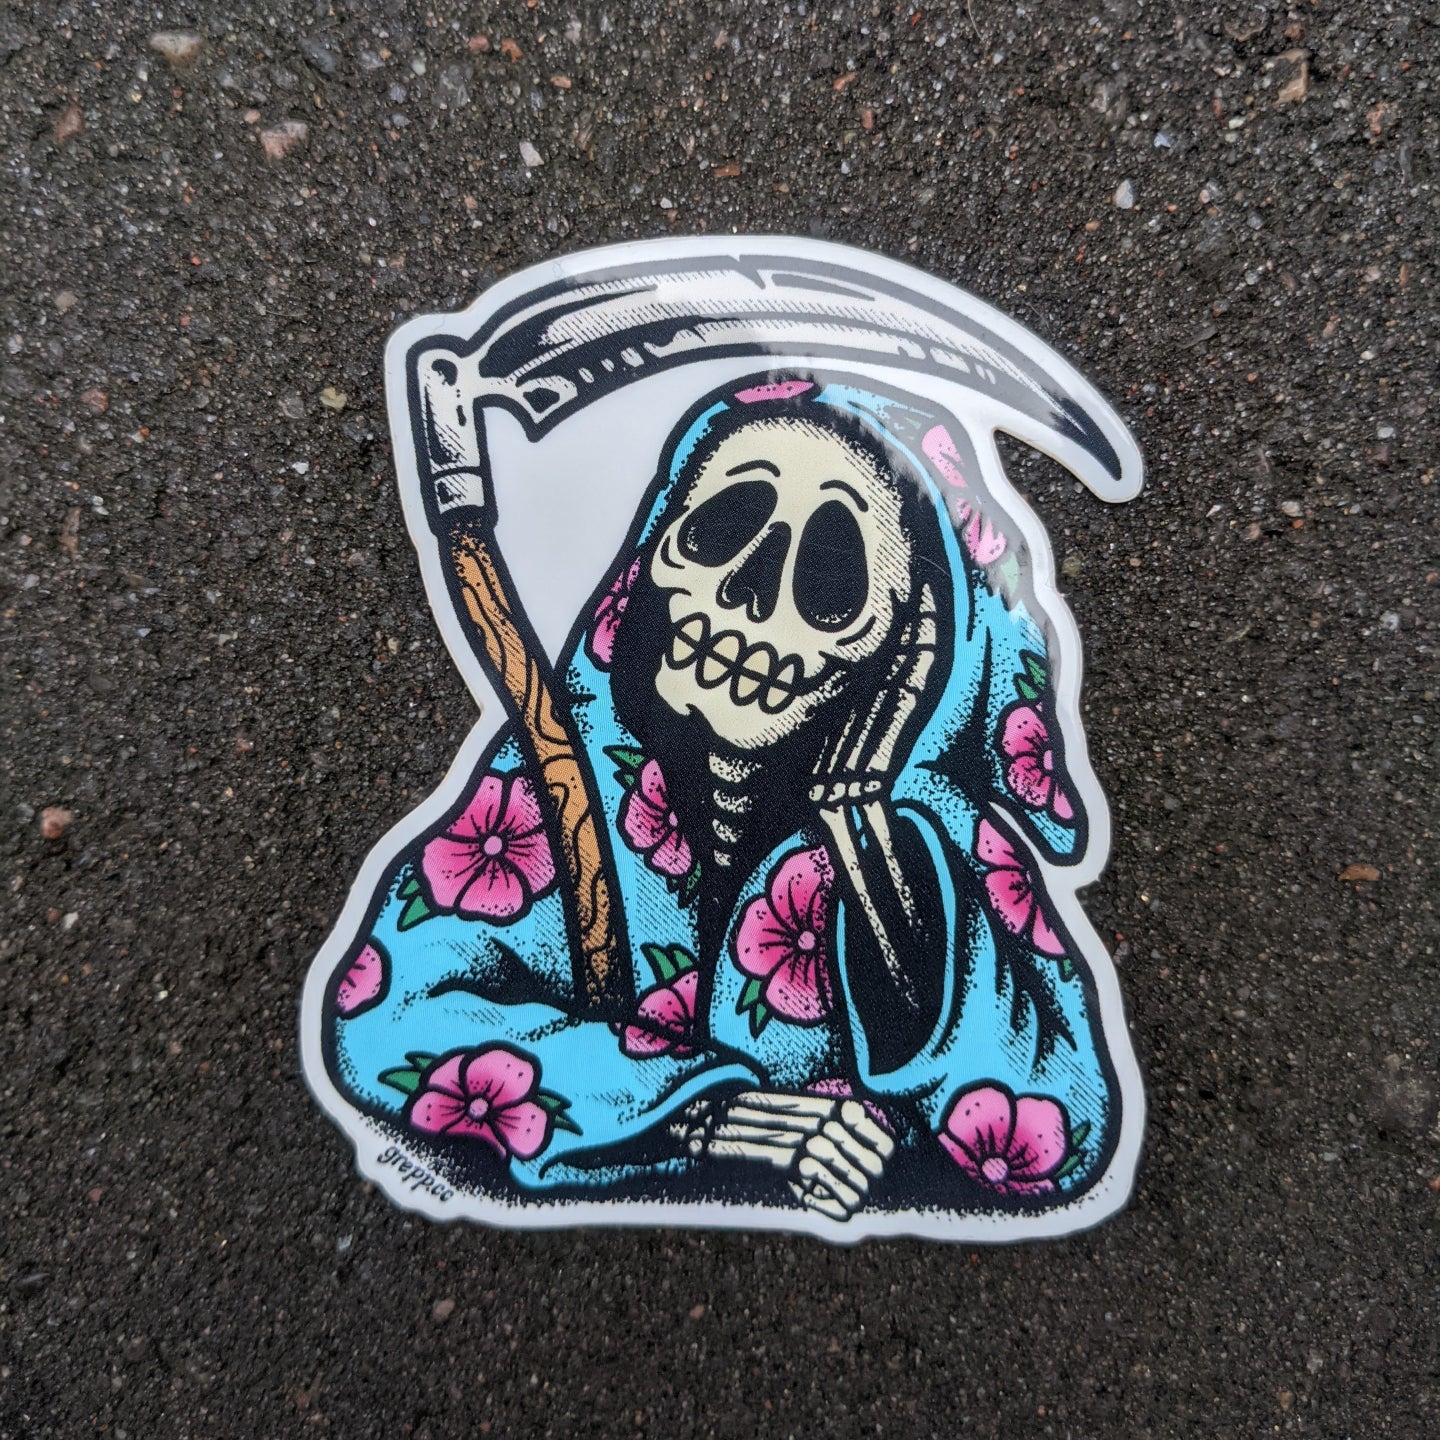 Grepp holiday reaper sticker